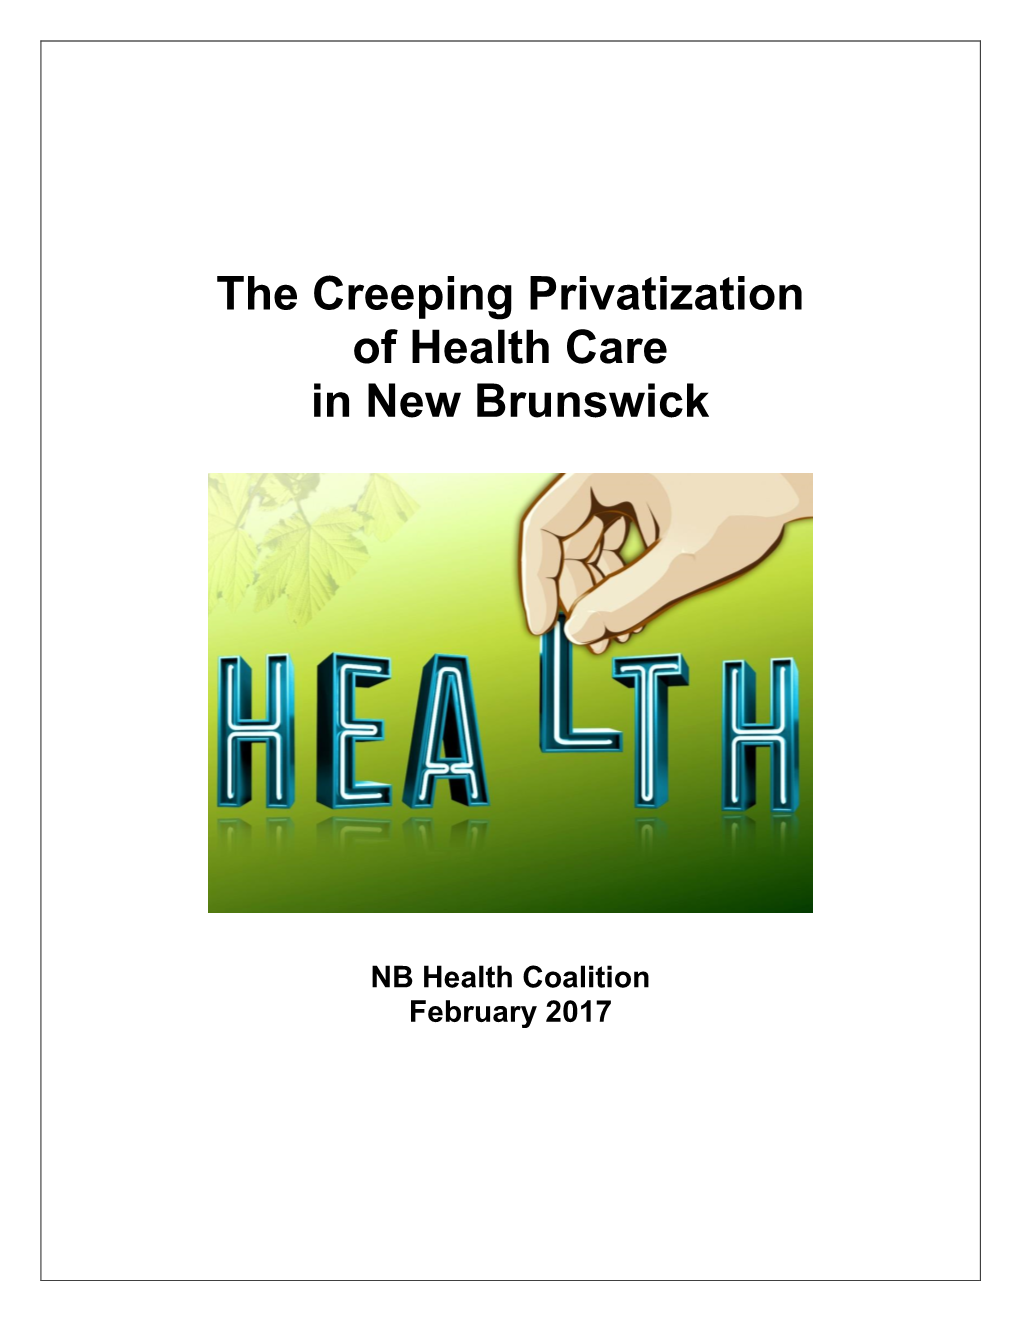 The Creeping Privatization of Health Care in New Brunswick